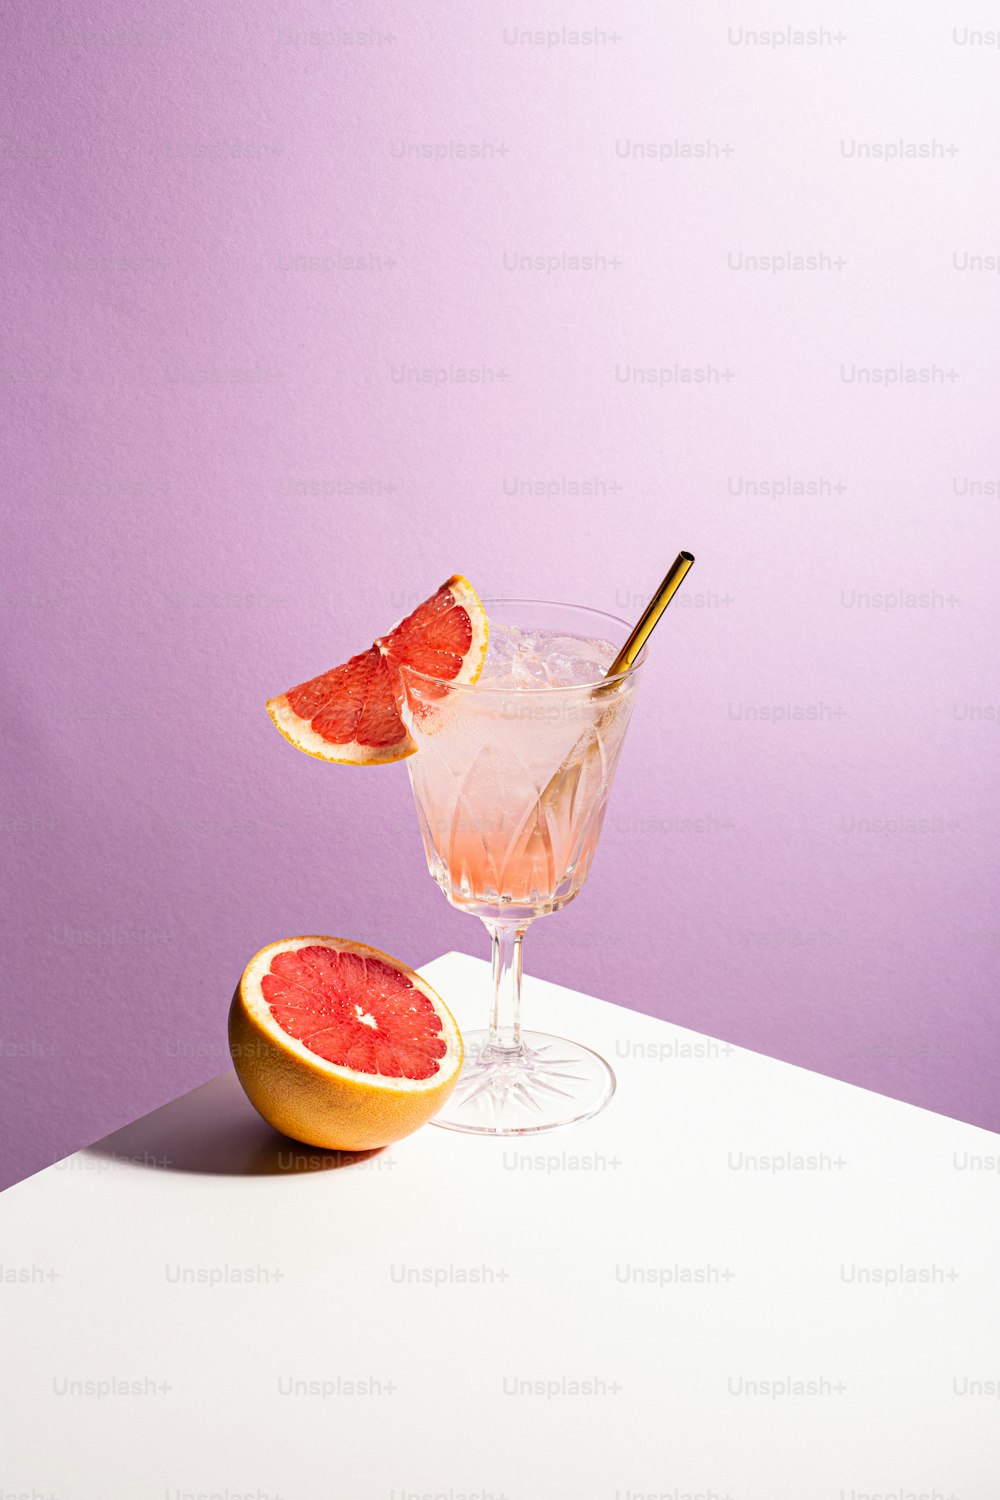 ein Grapefruit-Cocktail garniert mit einem goldenen Löffel